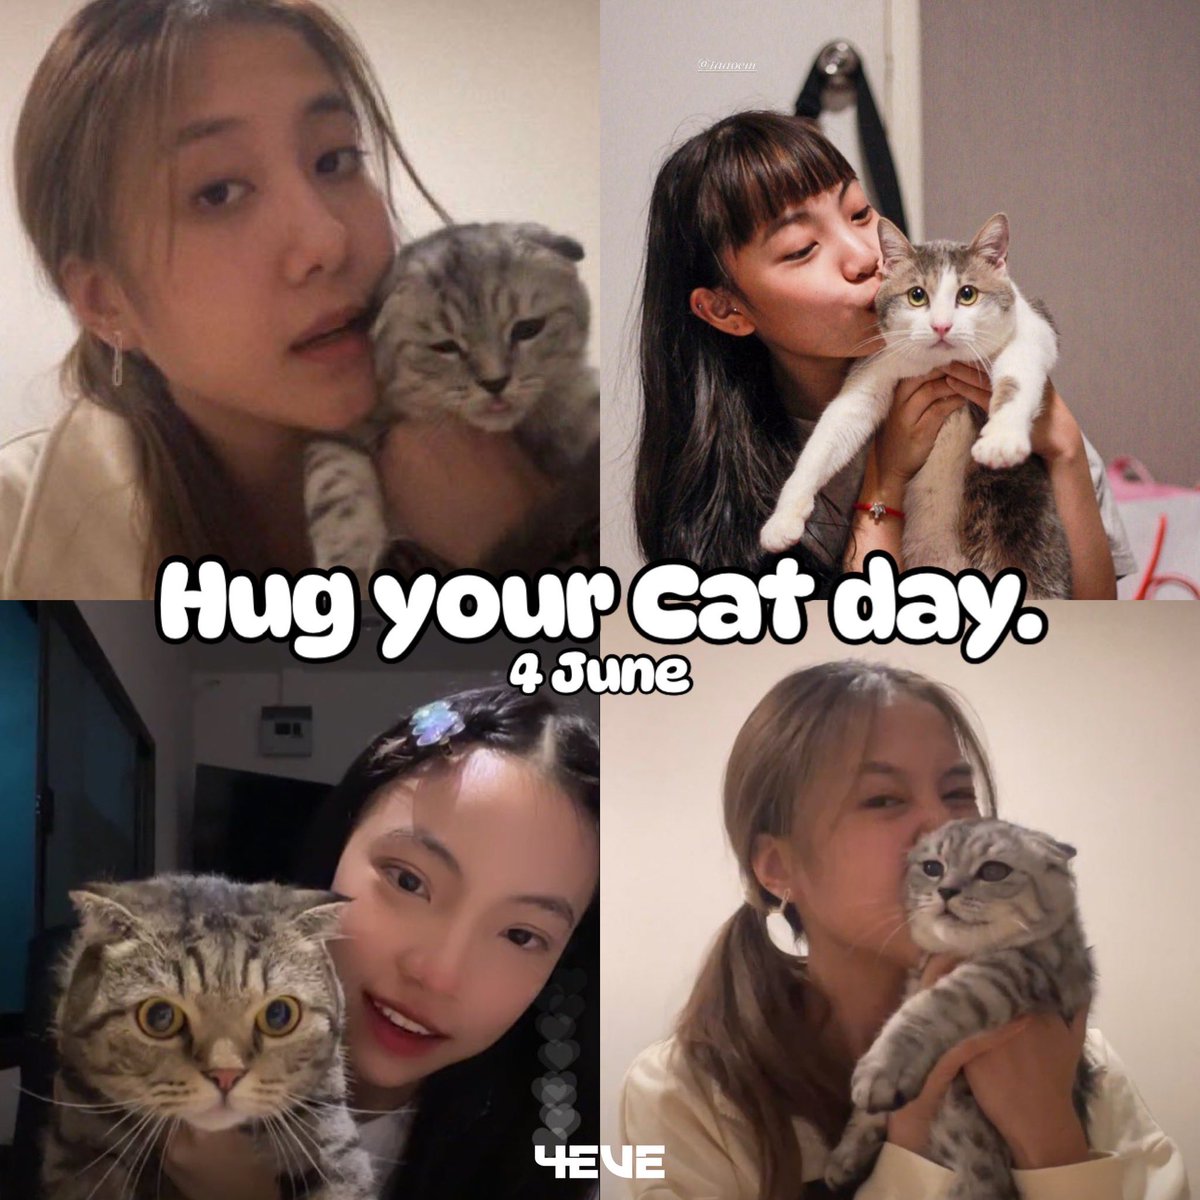 วันนี้คุณกอดแมวแล้วหรือยัง?
4 มิถุนายน #วันกอดแมว 
#HugYourCatDay 
#วันกอดแมวสากล 
#4EVE #Jorin4EVE #Taaom4EVE